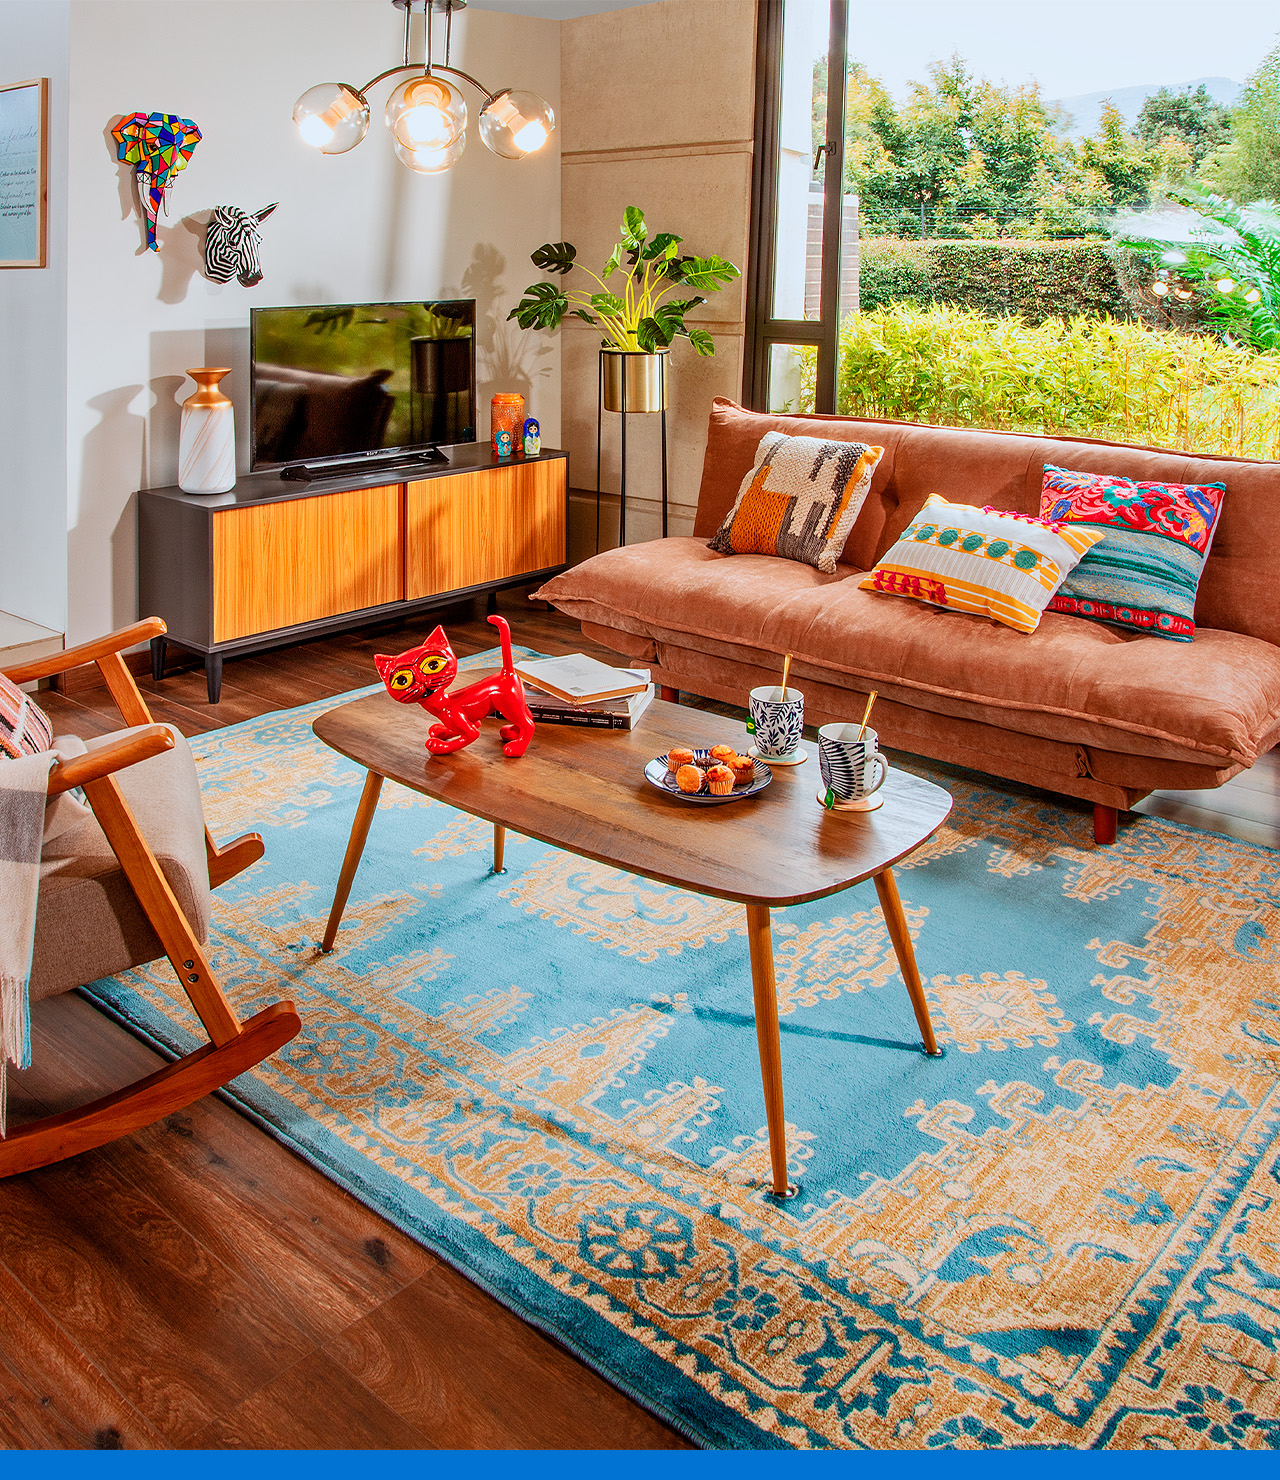 Decora una sala de estar con estilo vintage - Miroytengo